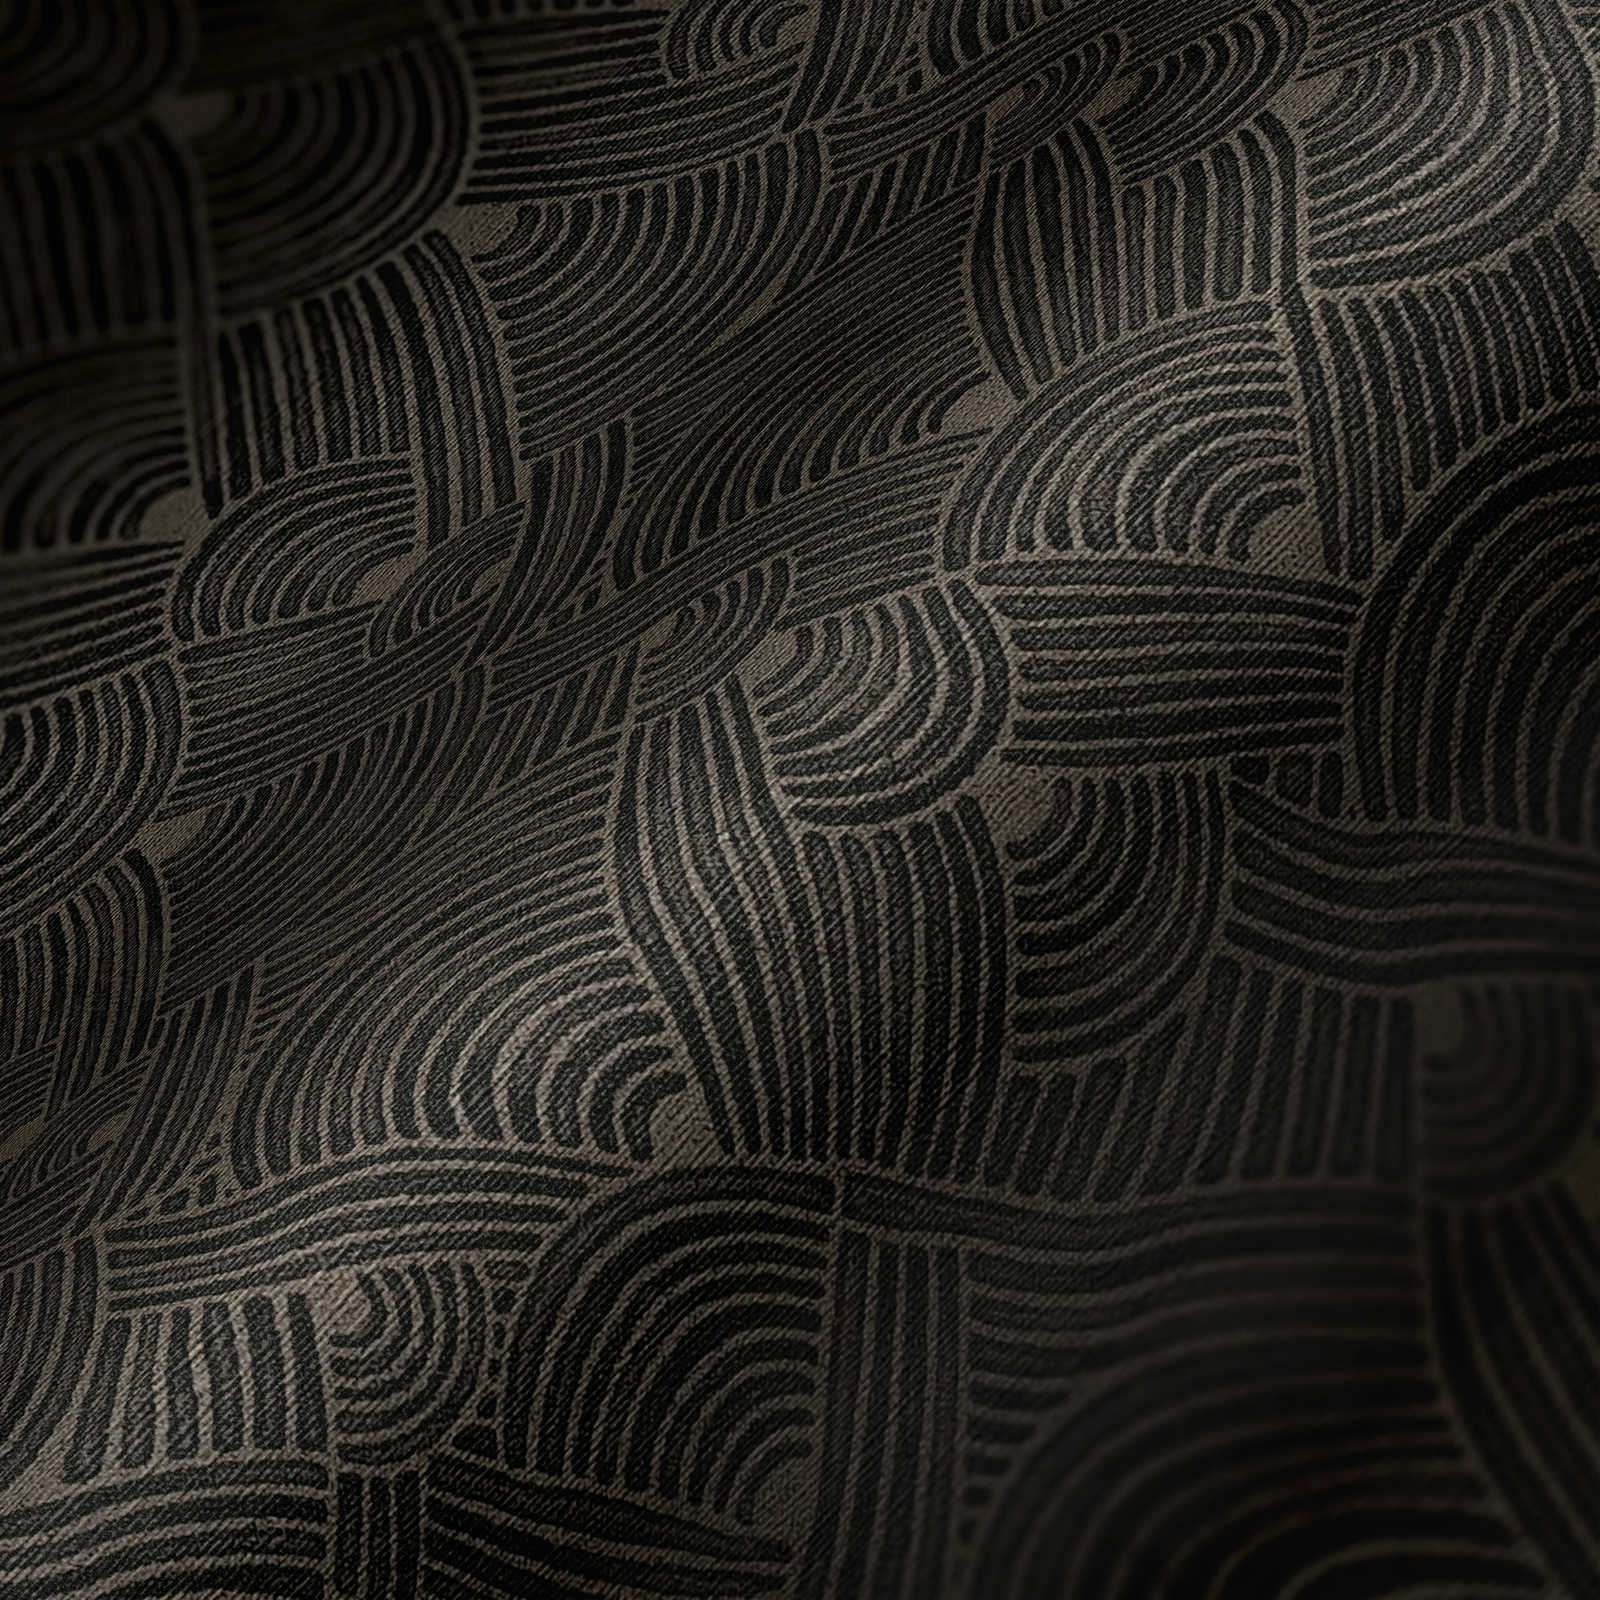             Donker behang met structuurmotief - grijs, zwart
        